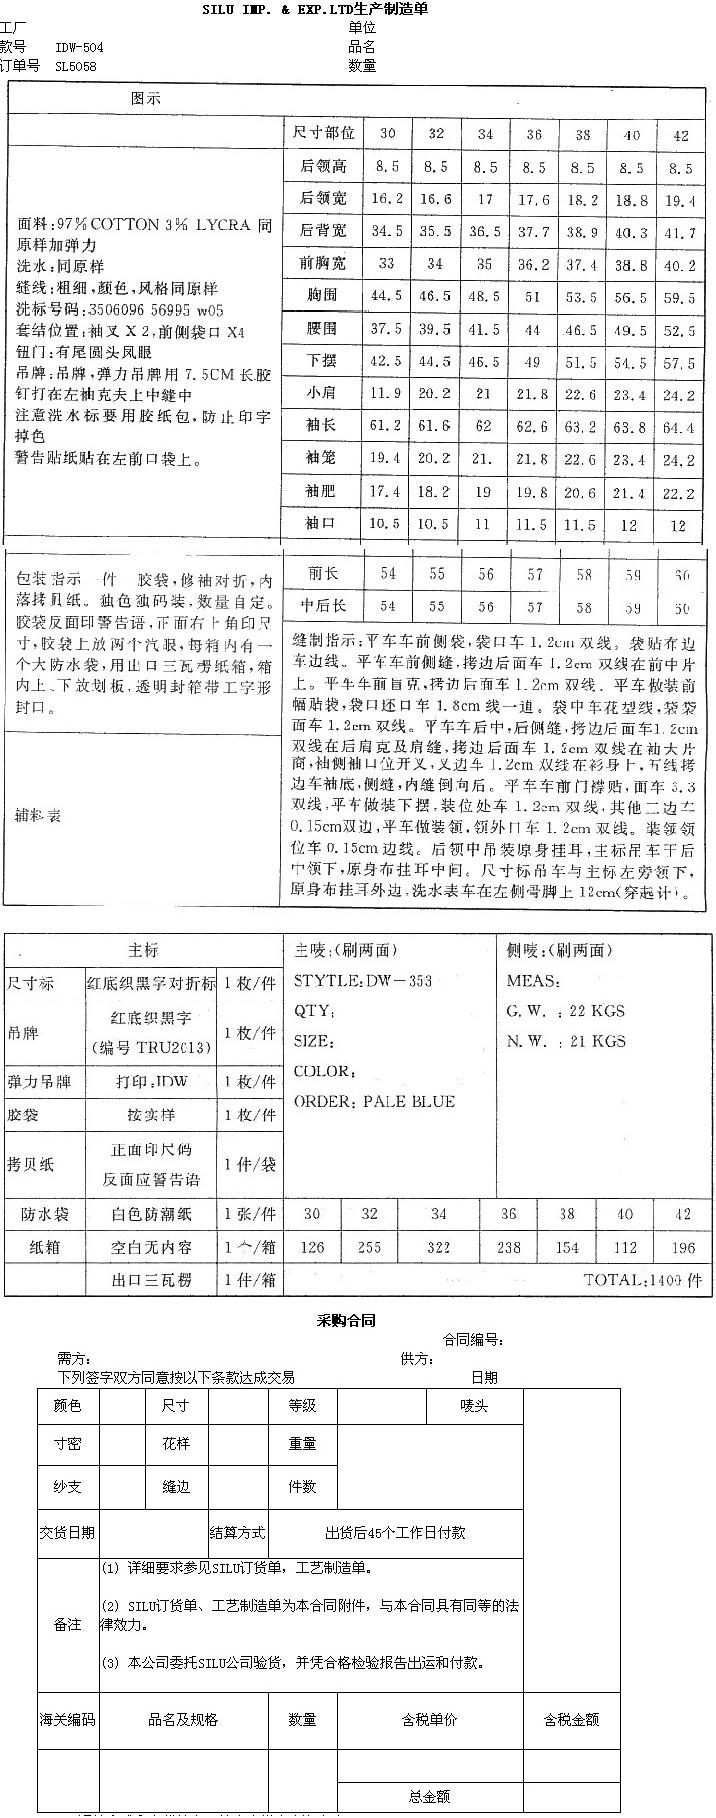 根据下述条件签订采购合同，要求格式清楚、条款明确、内容完整。 上海天时国际贸易公司与SILU贸易公根